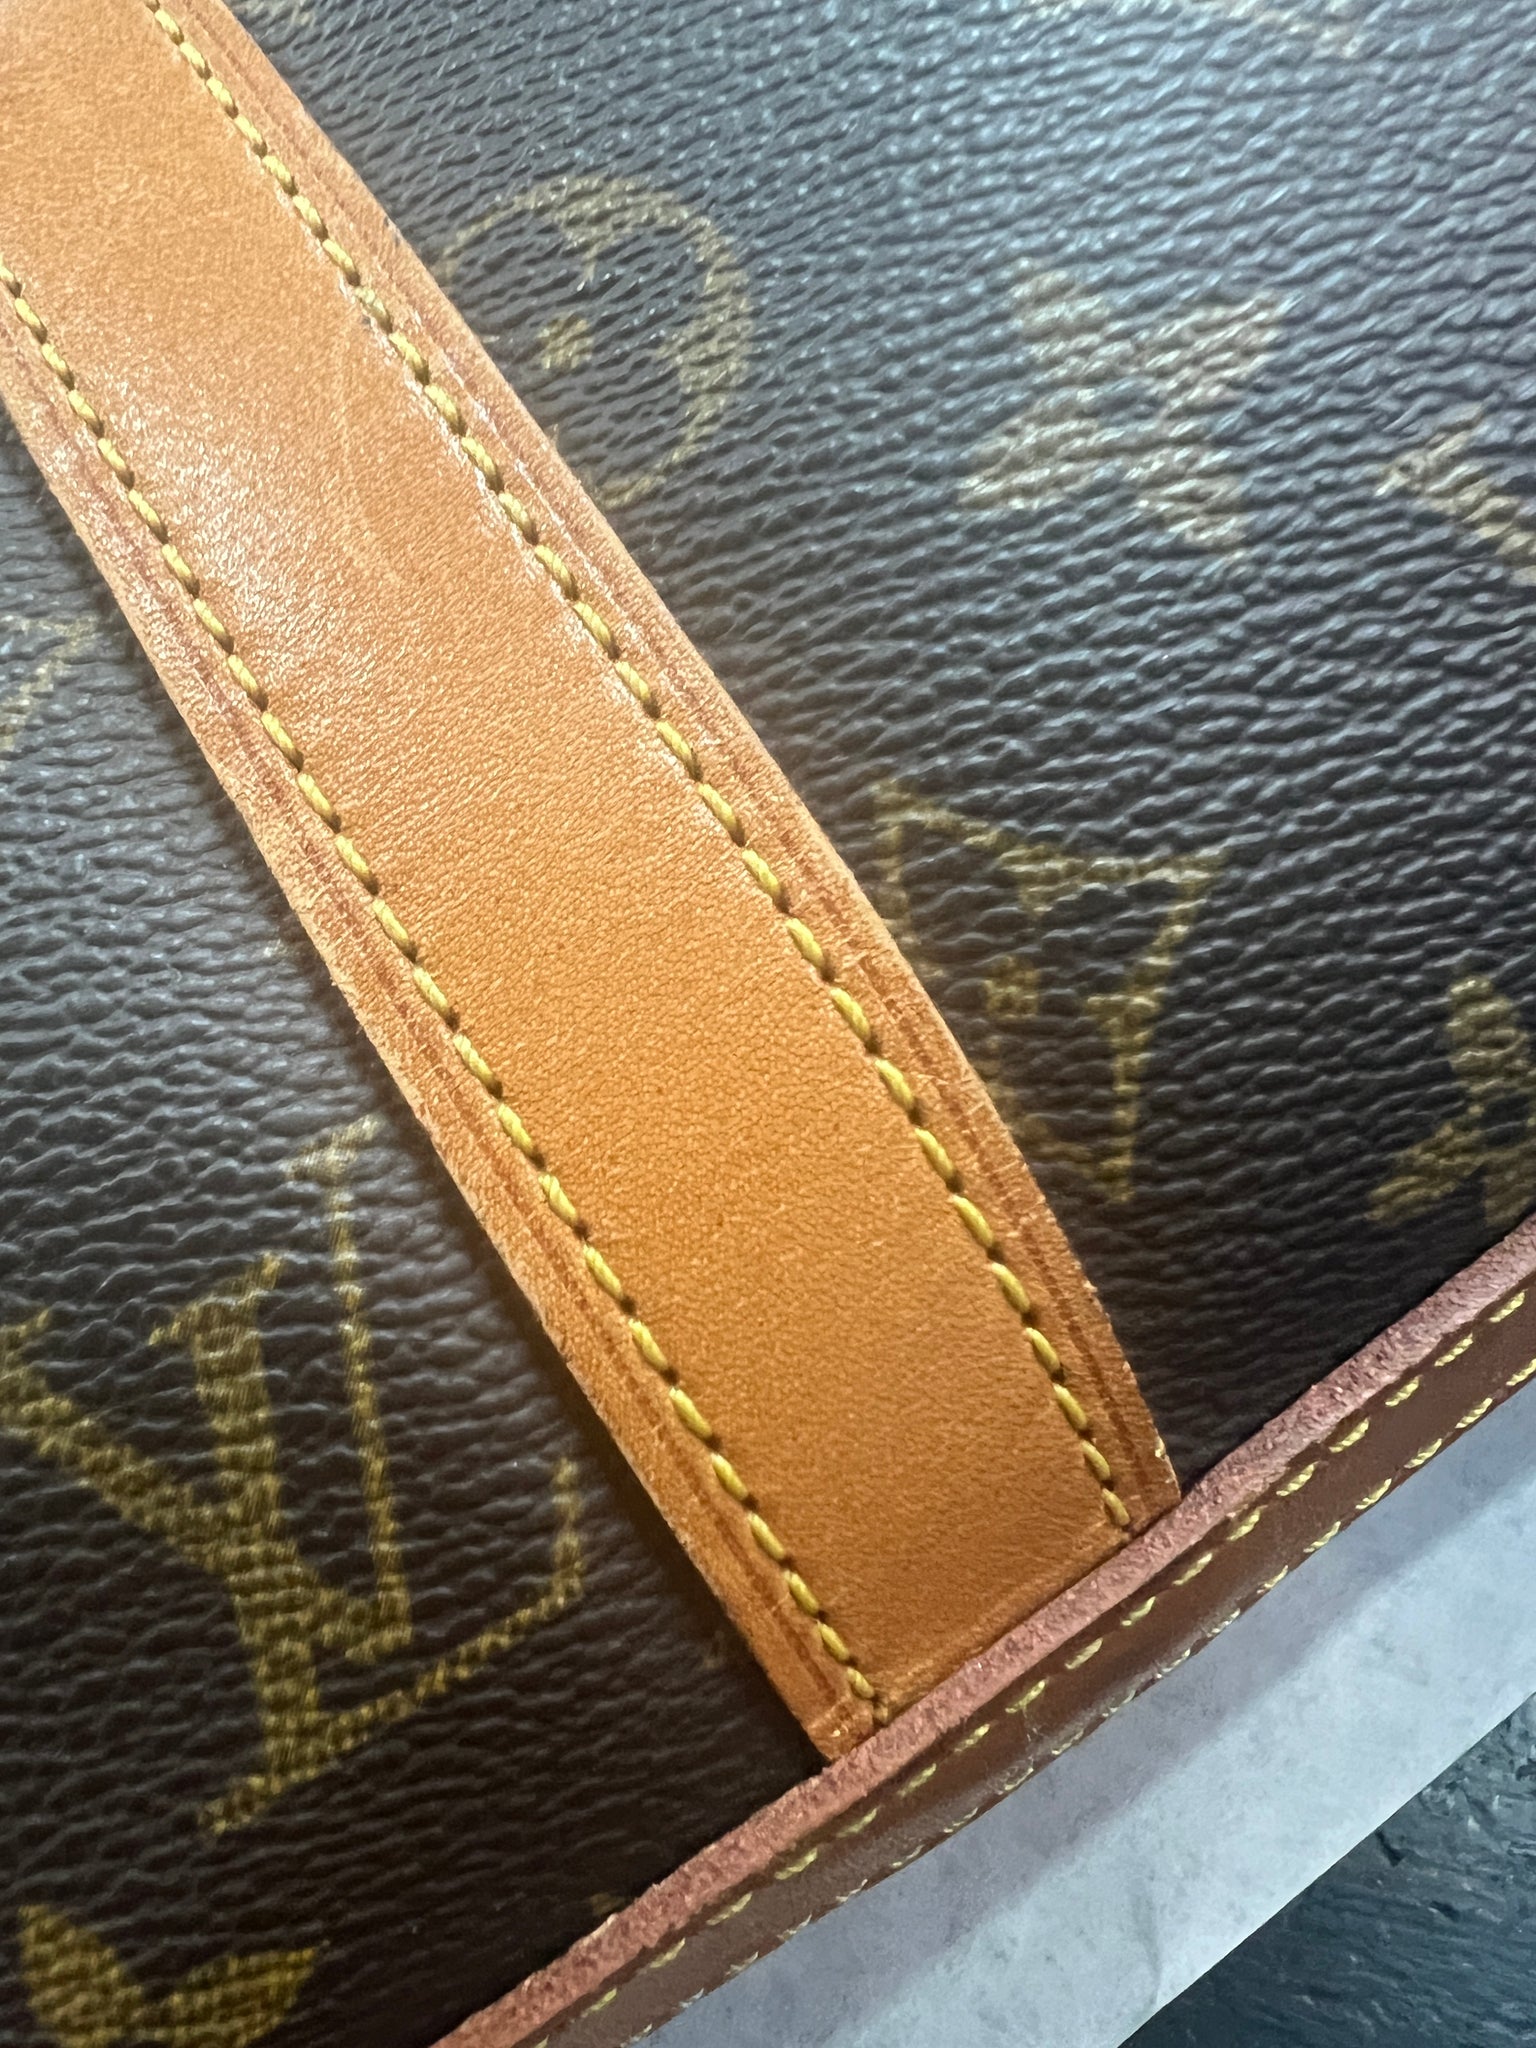 authentic louis vuitton purse